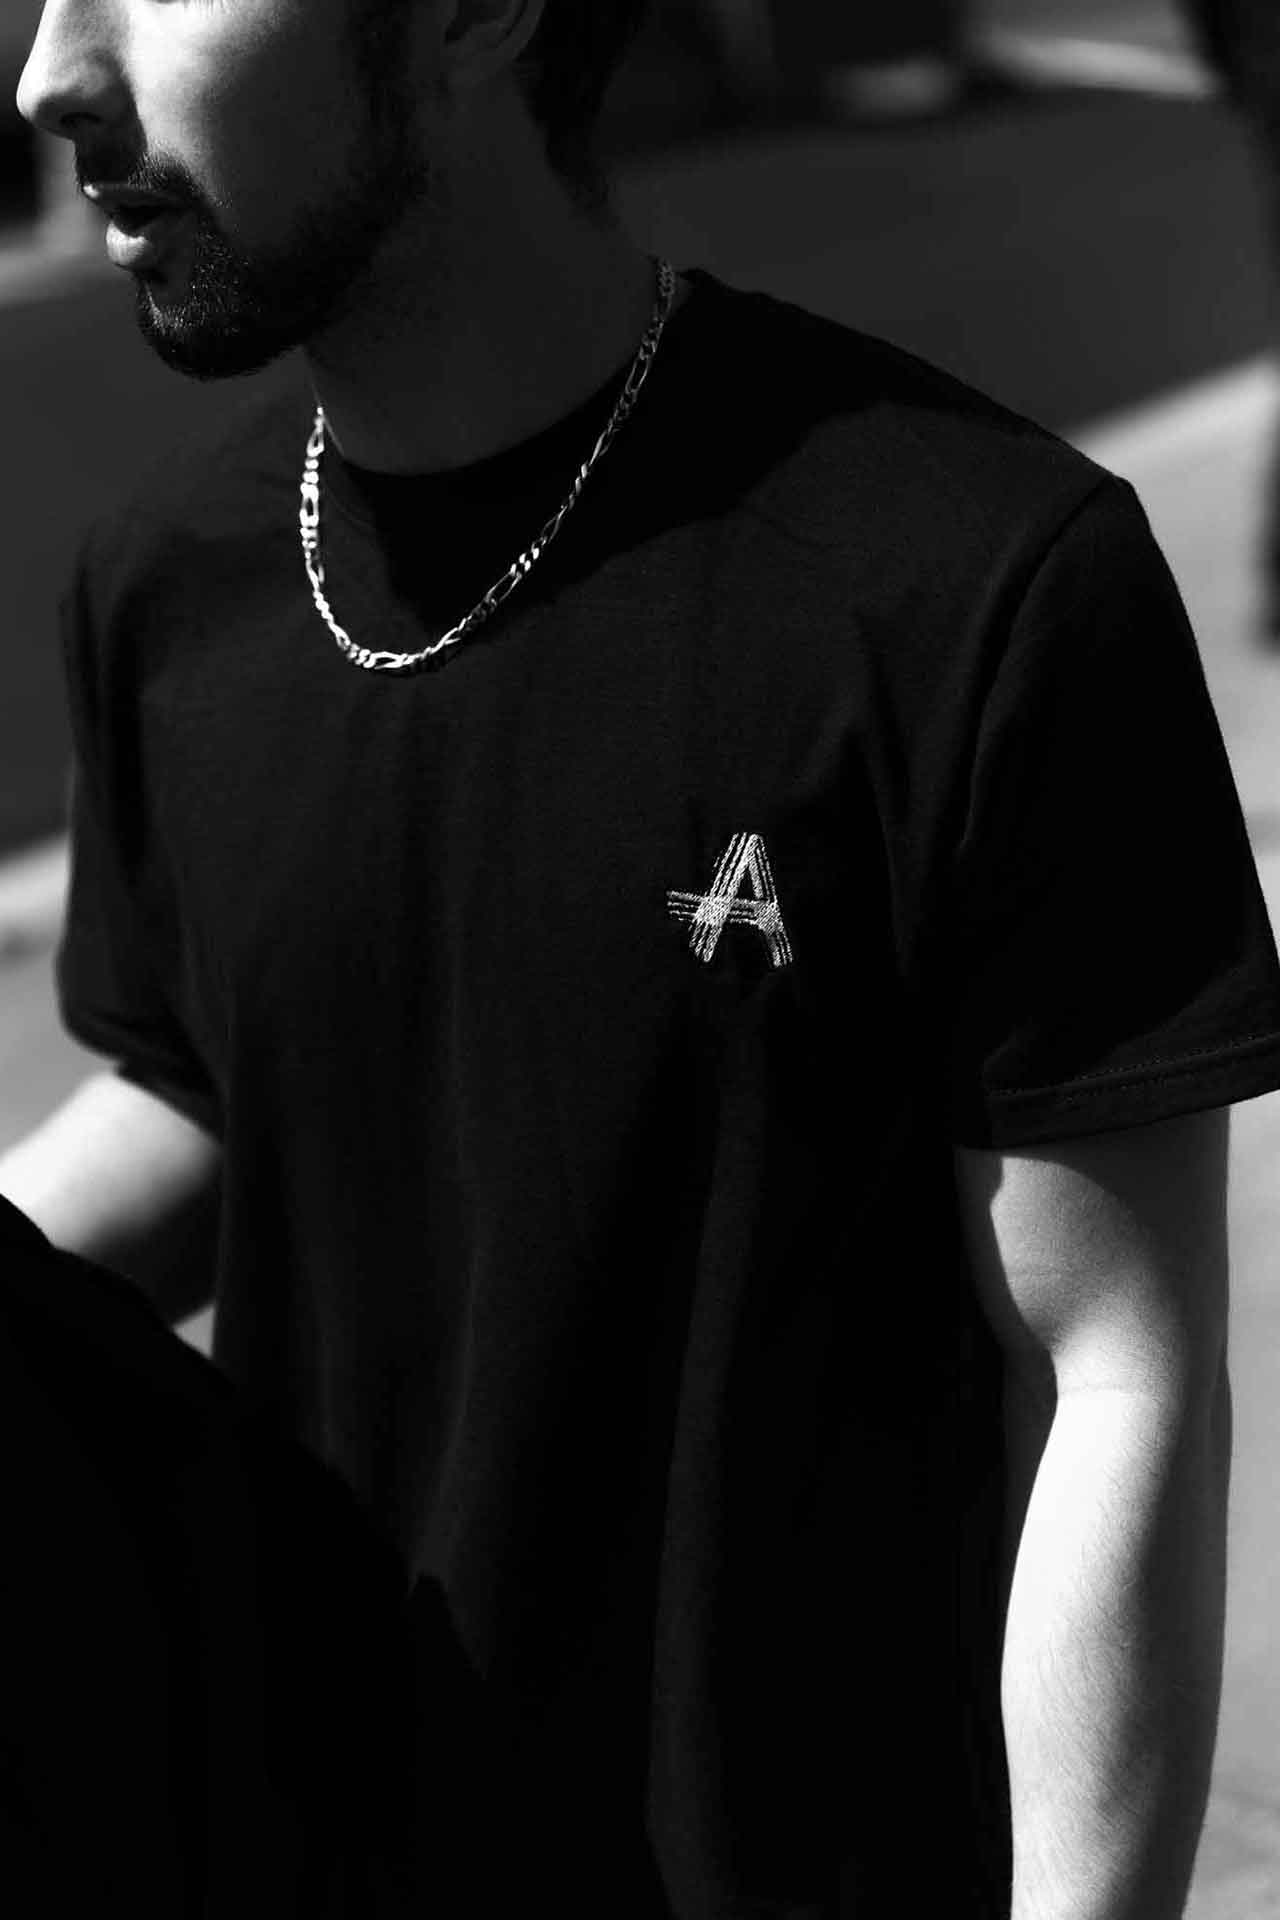 Image de la Collection Just Us d'Amble : T-shirt noir élégant avec le logo distinctif 'A' d'Amble brodé sur le devant. Ce t-shirt incarne le style emblématique de la collection Just Us.